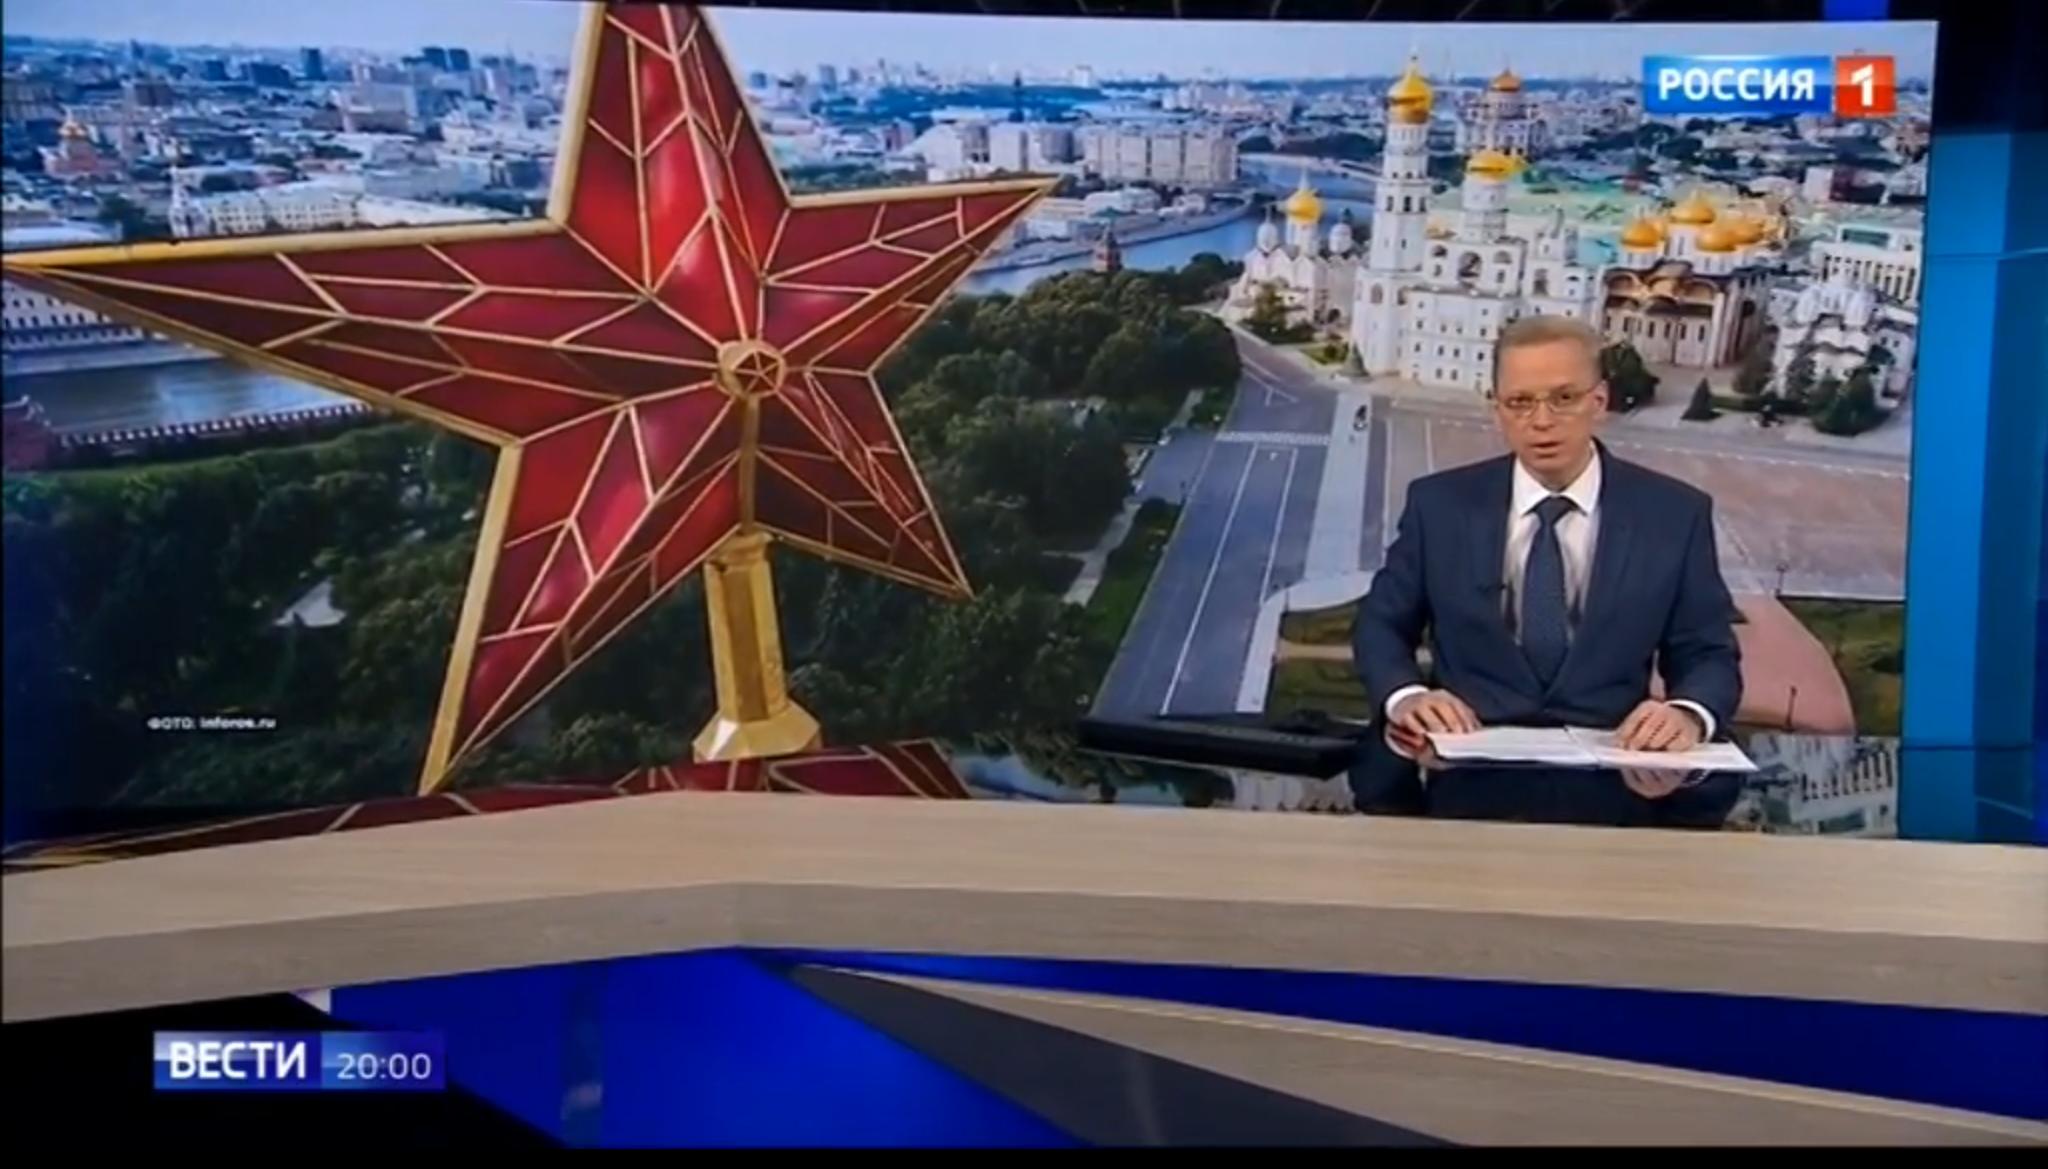 Studio telewizyjne z wielką czerwoną gwiazdą i cerkwią w tle. Rosyjski napis "Wiesti"